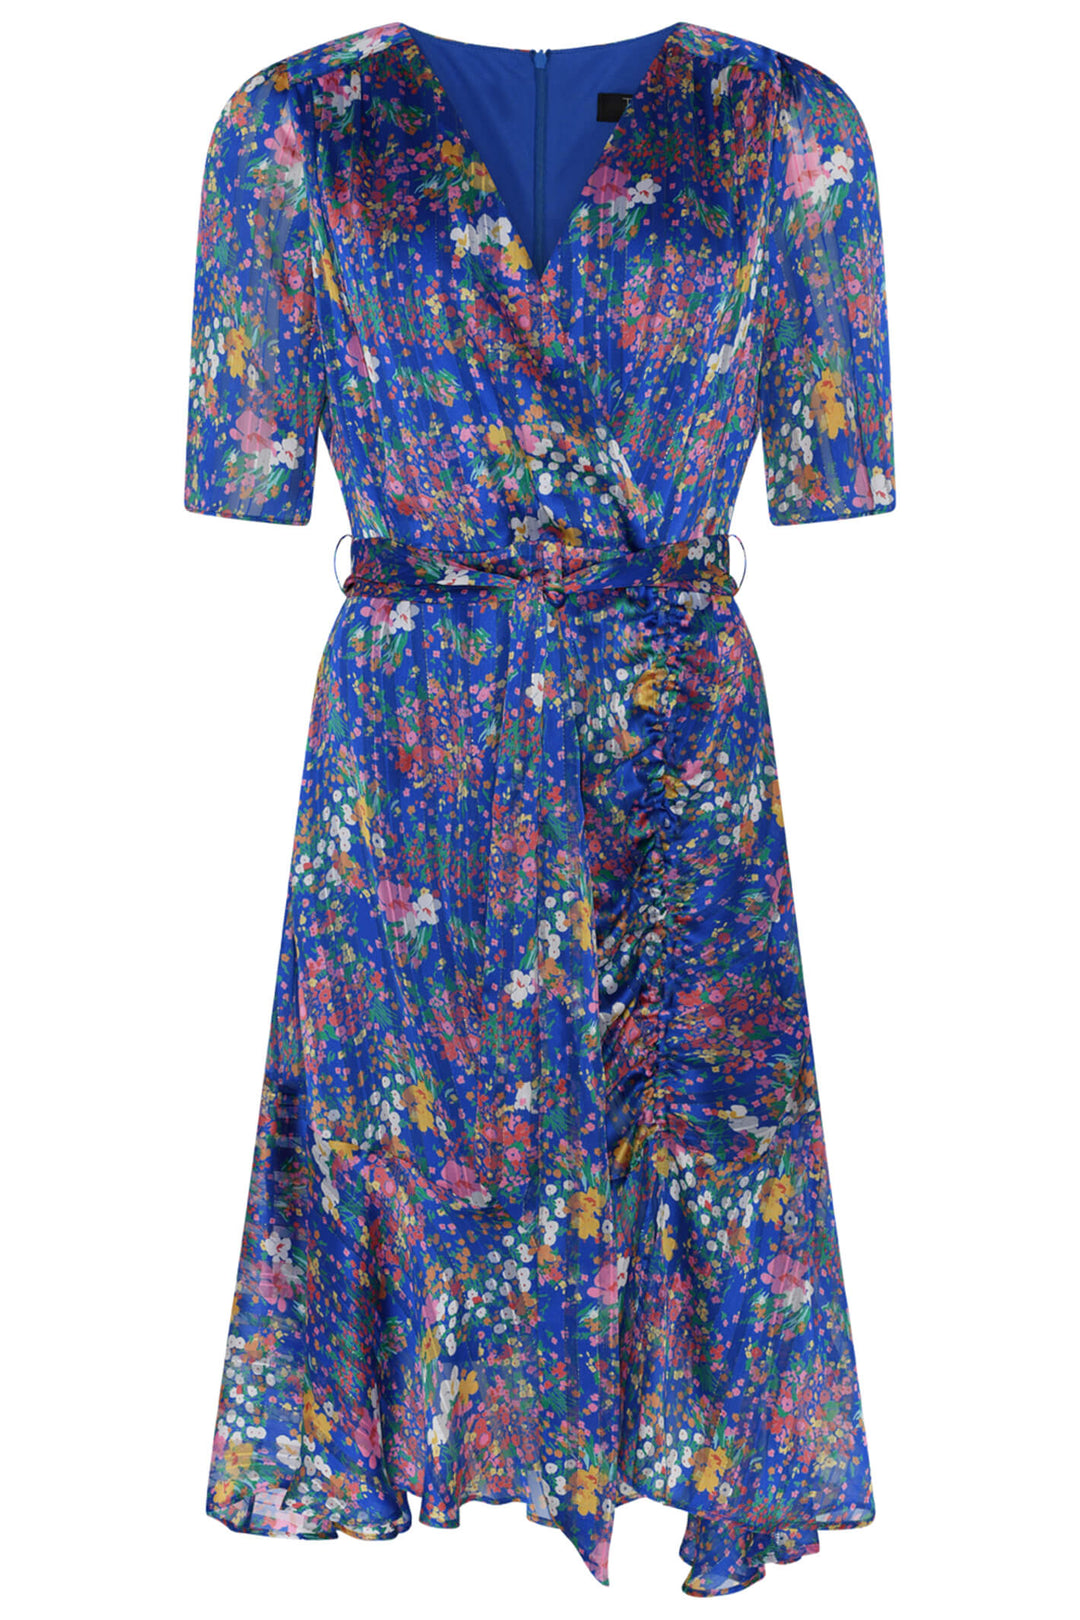 Tia 78589 Cobalt Blue Floral Dress - Experience Boutique